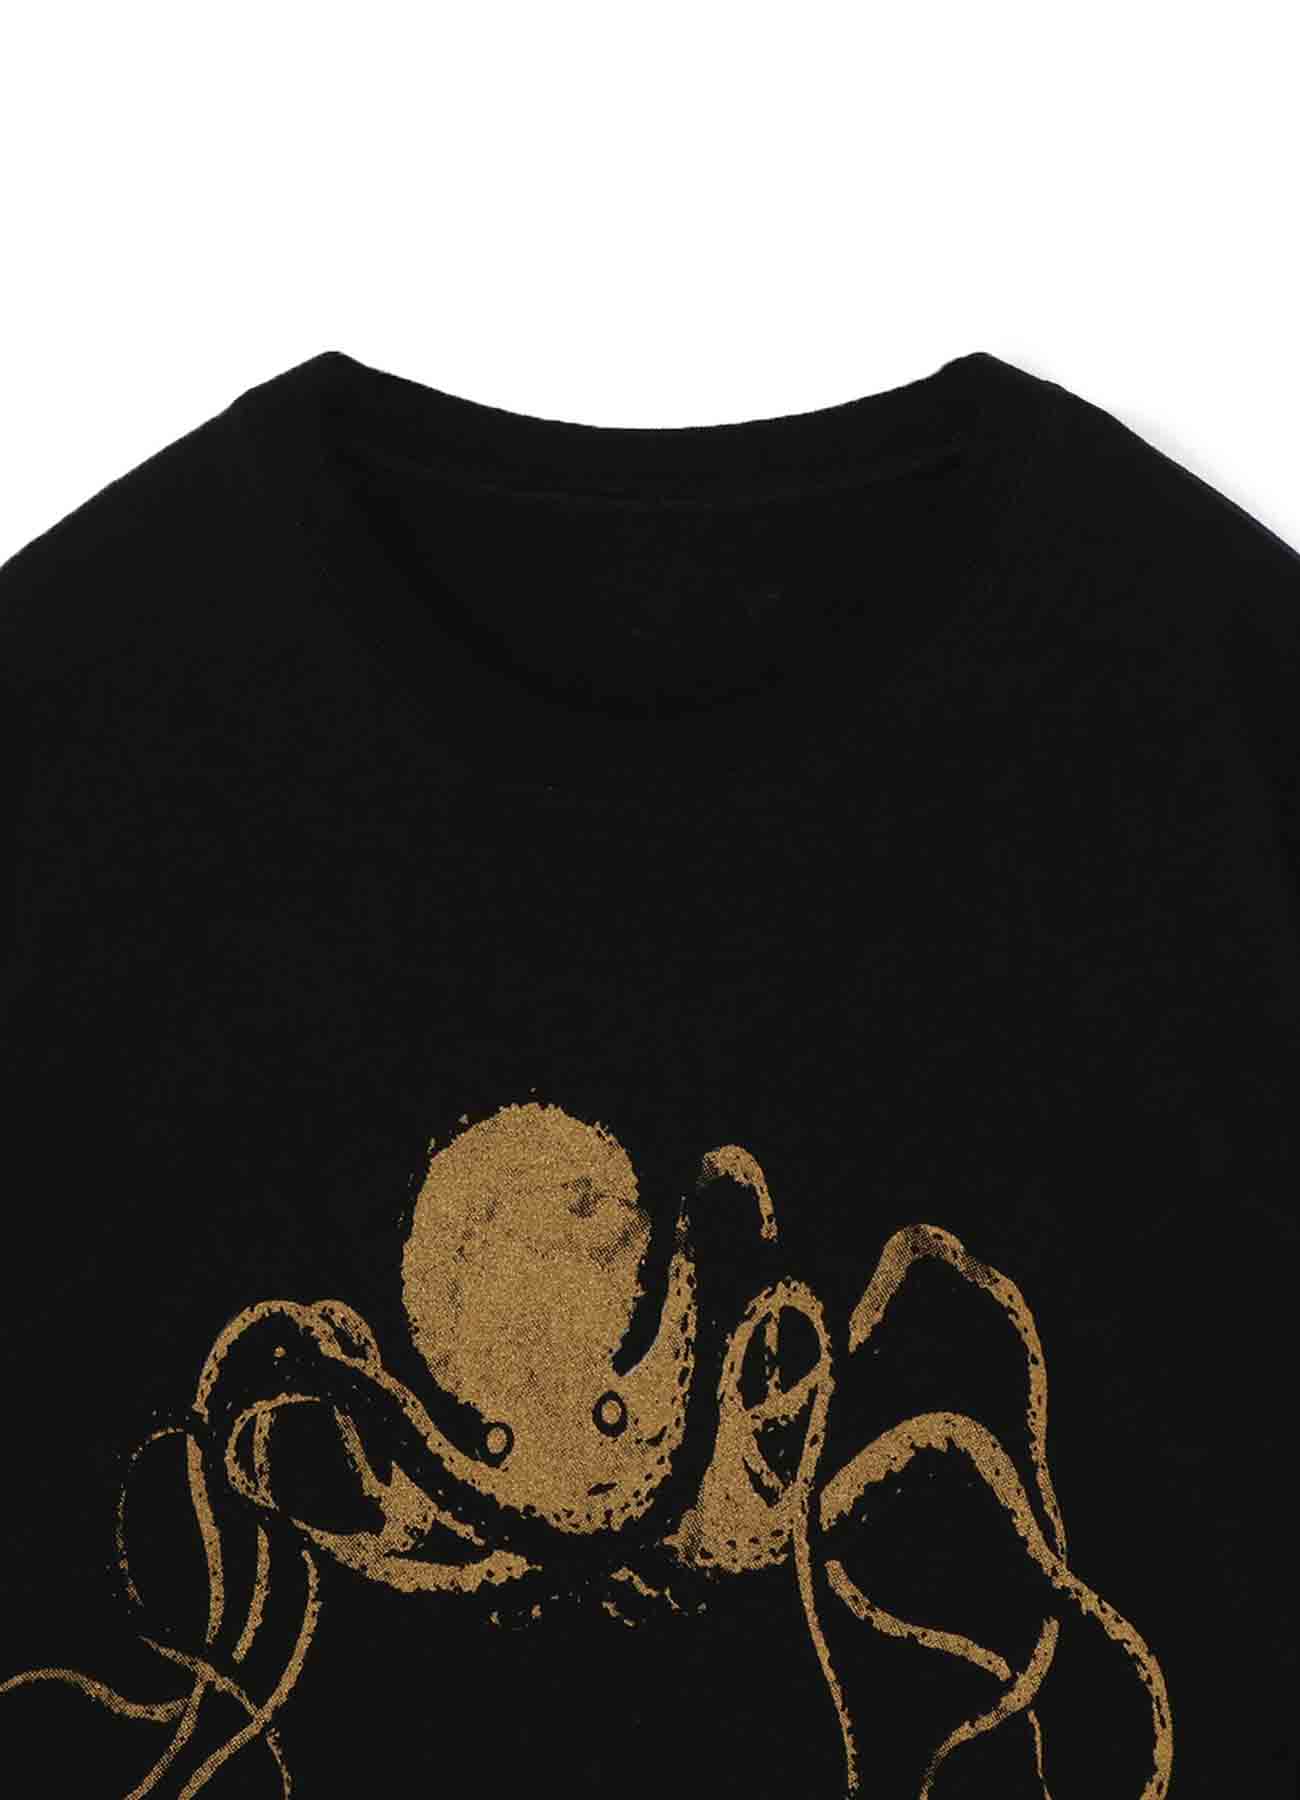 BANG ON!TOKYO  Octopus T-shirts